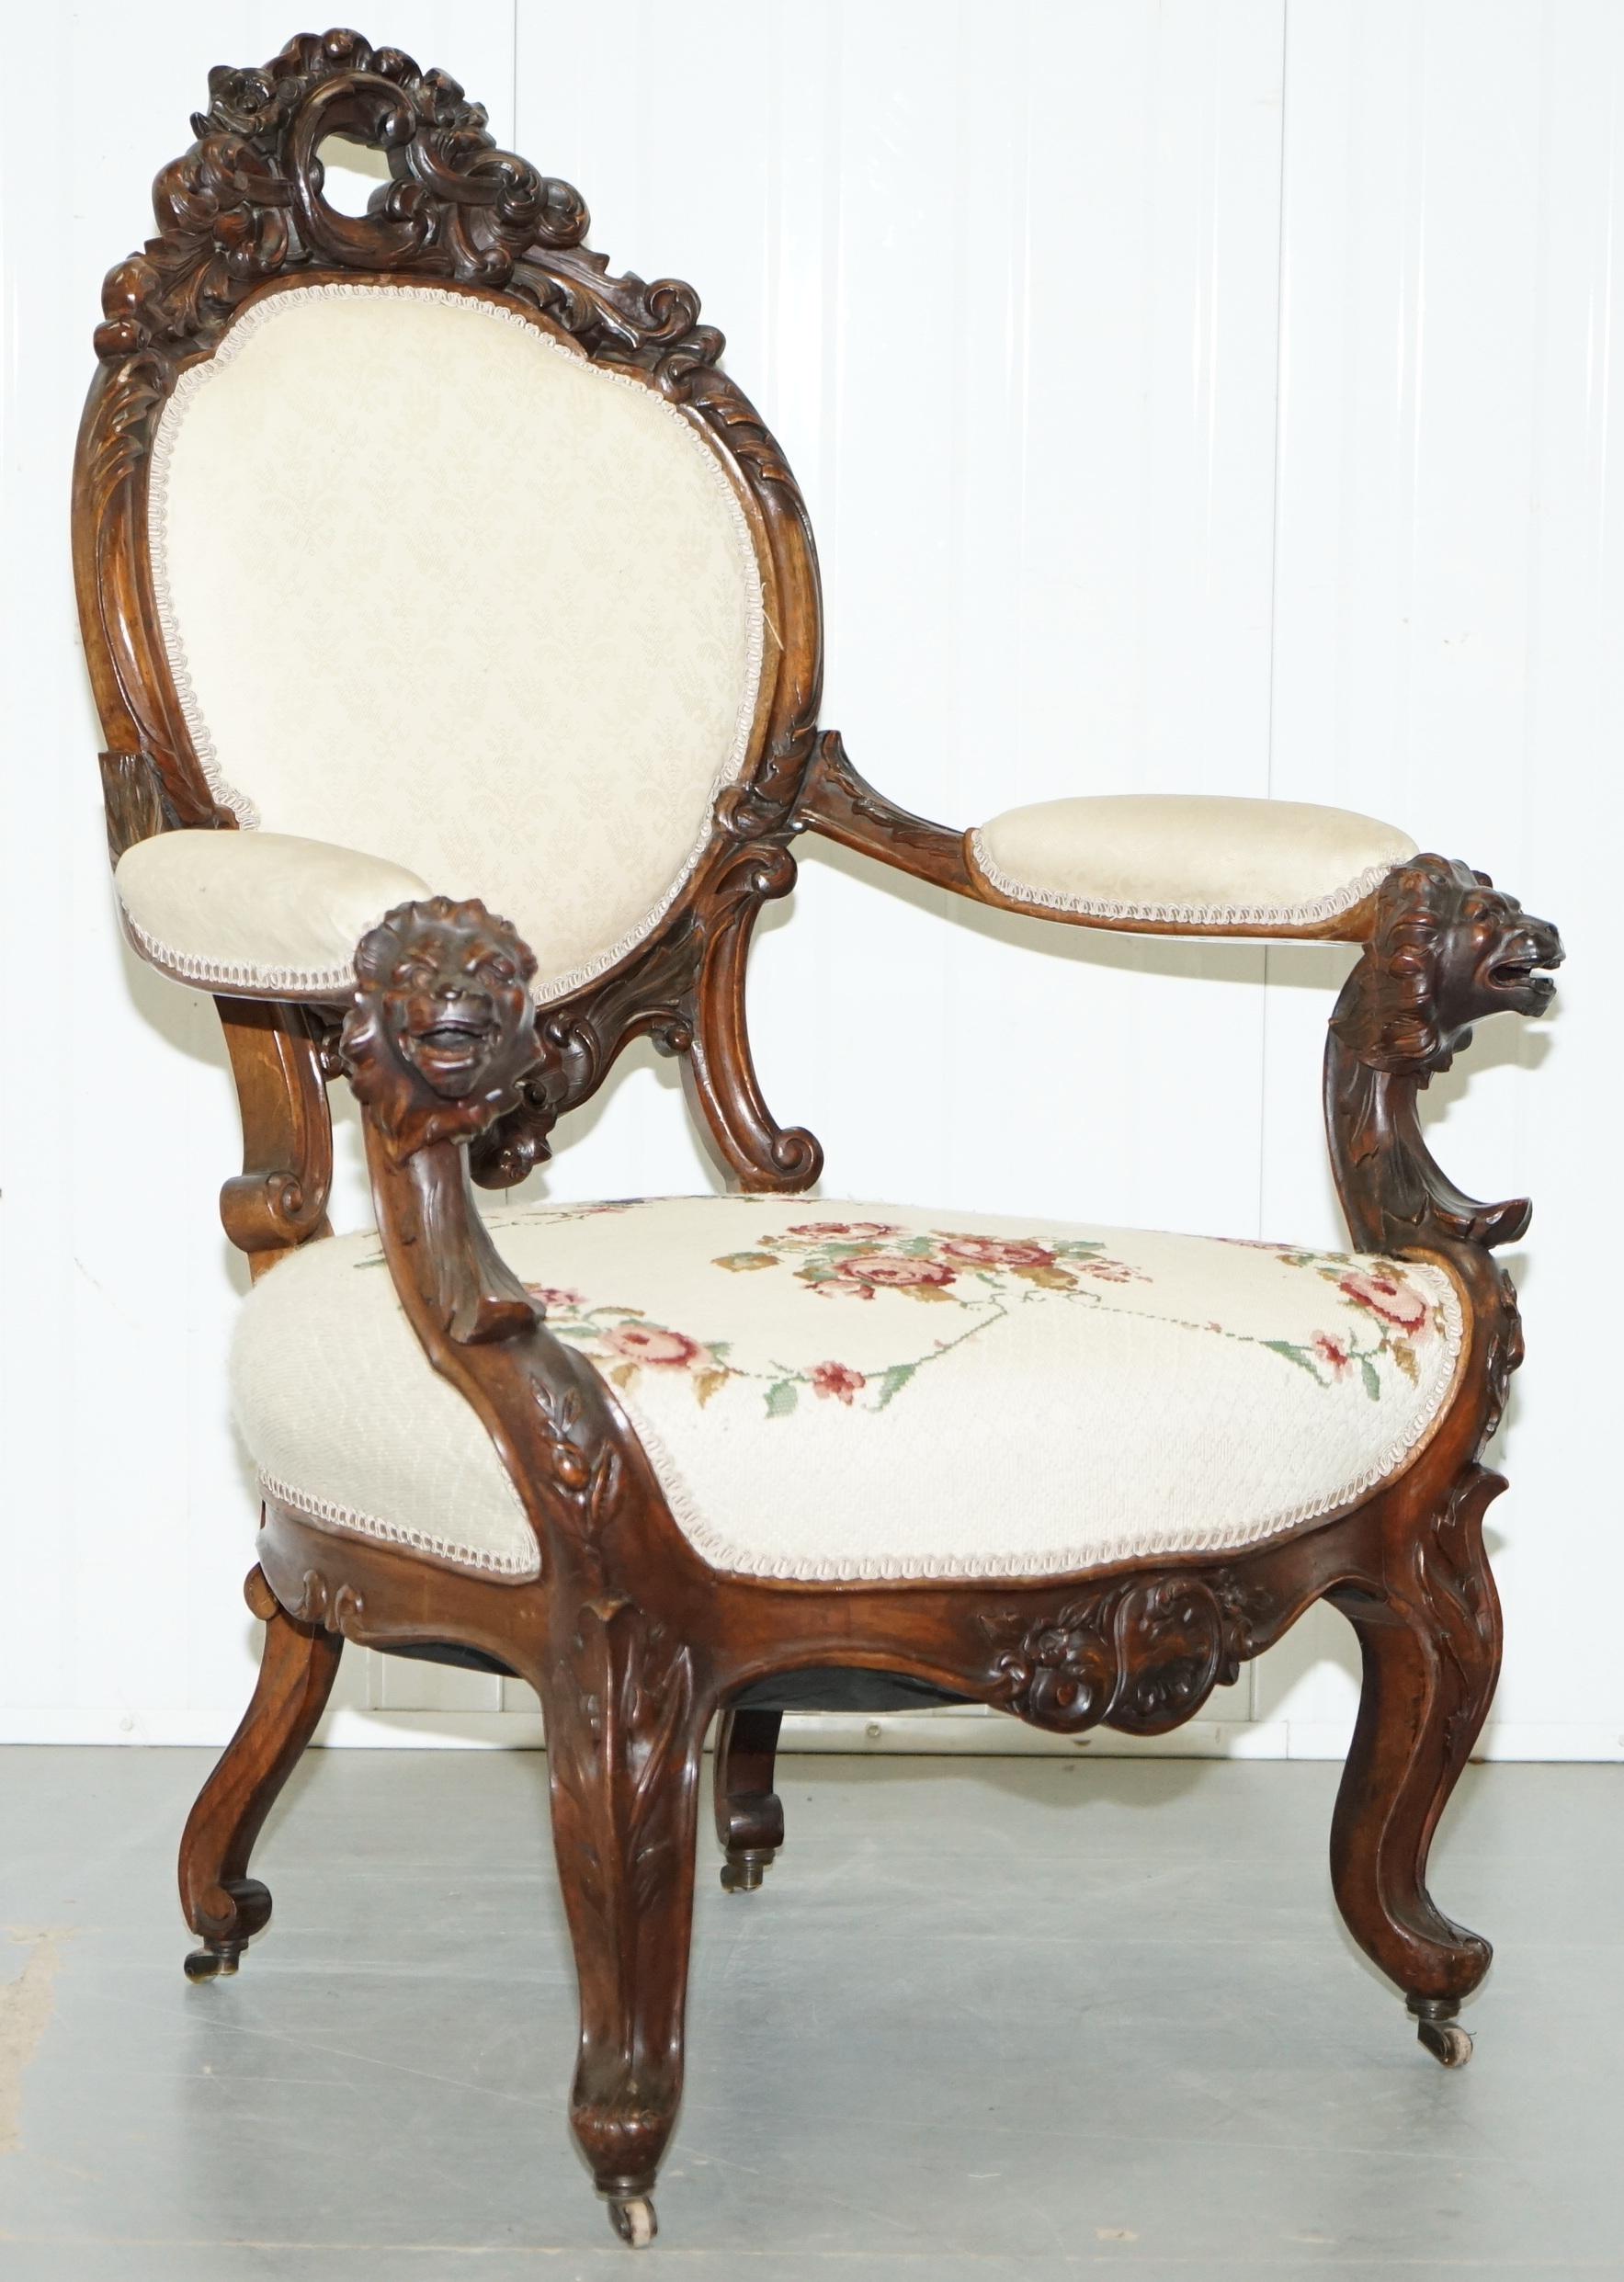 Nous sommes ravis de proposer à la vente ce très rare fauteuil de salon victorien sculpté à la main avec des détails de lion et des roulettes estampillées.

Une bonne trouvaille, il est rare de trouver des fauteuils de salon avec des sculptures